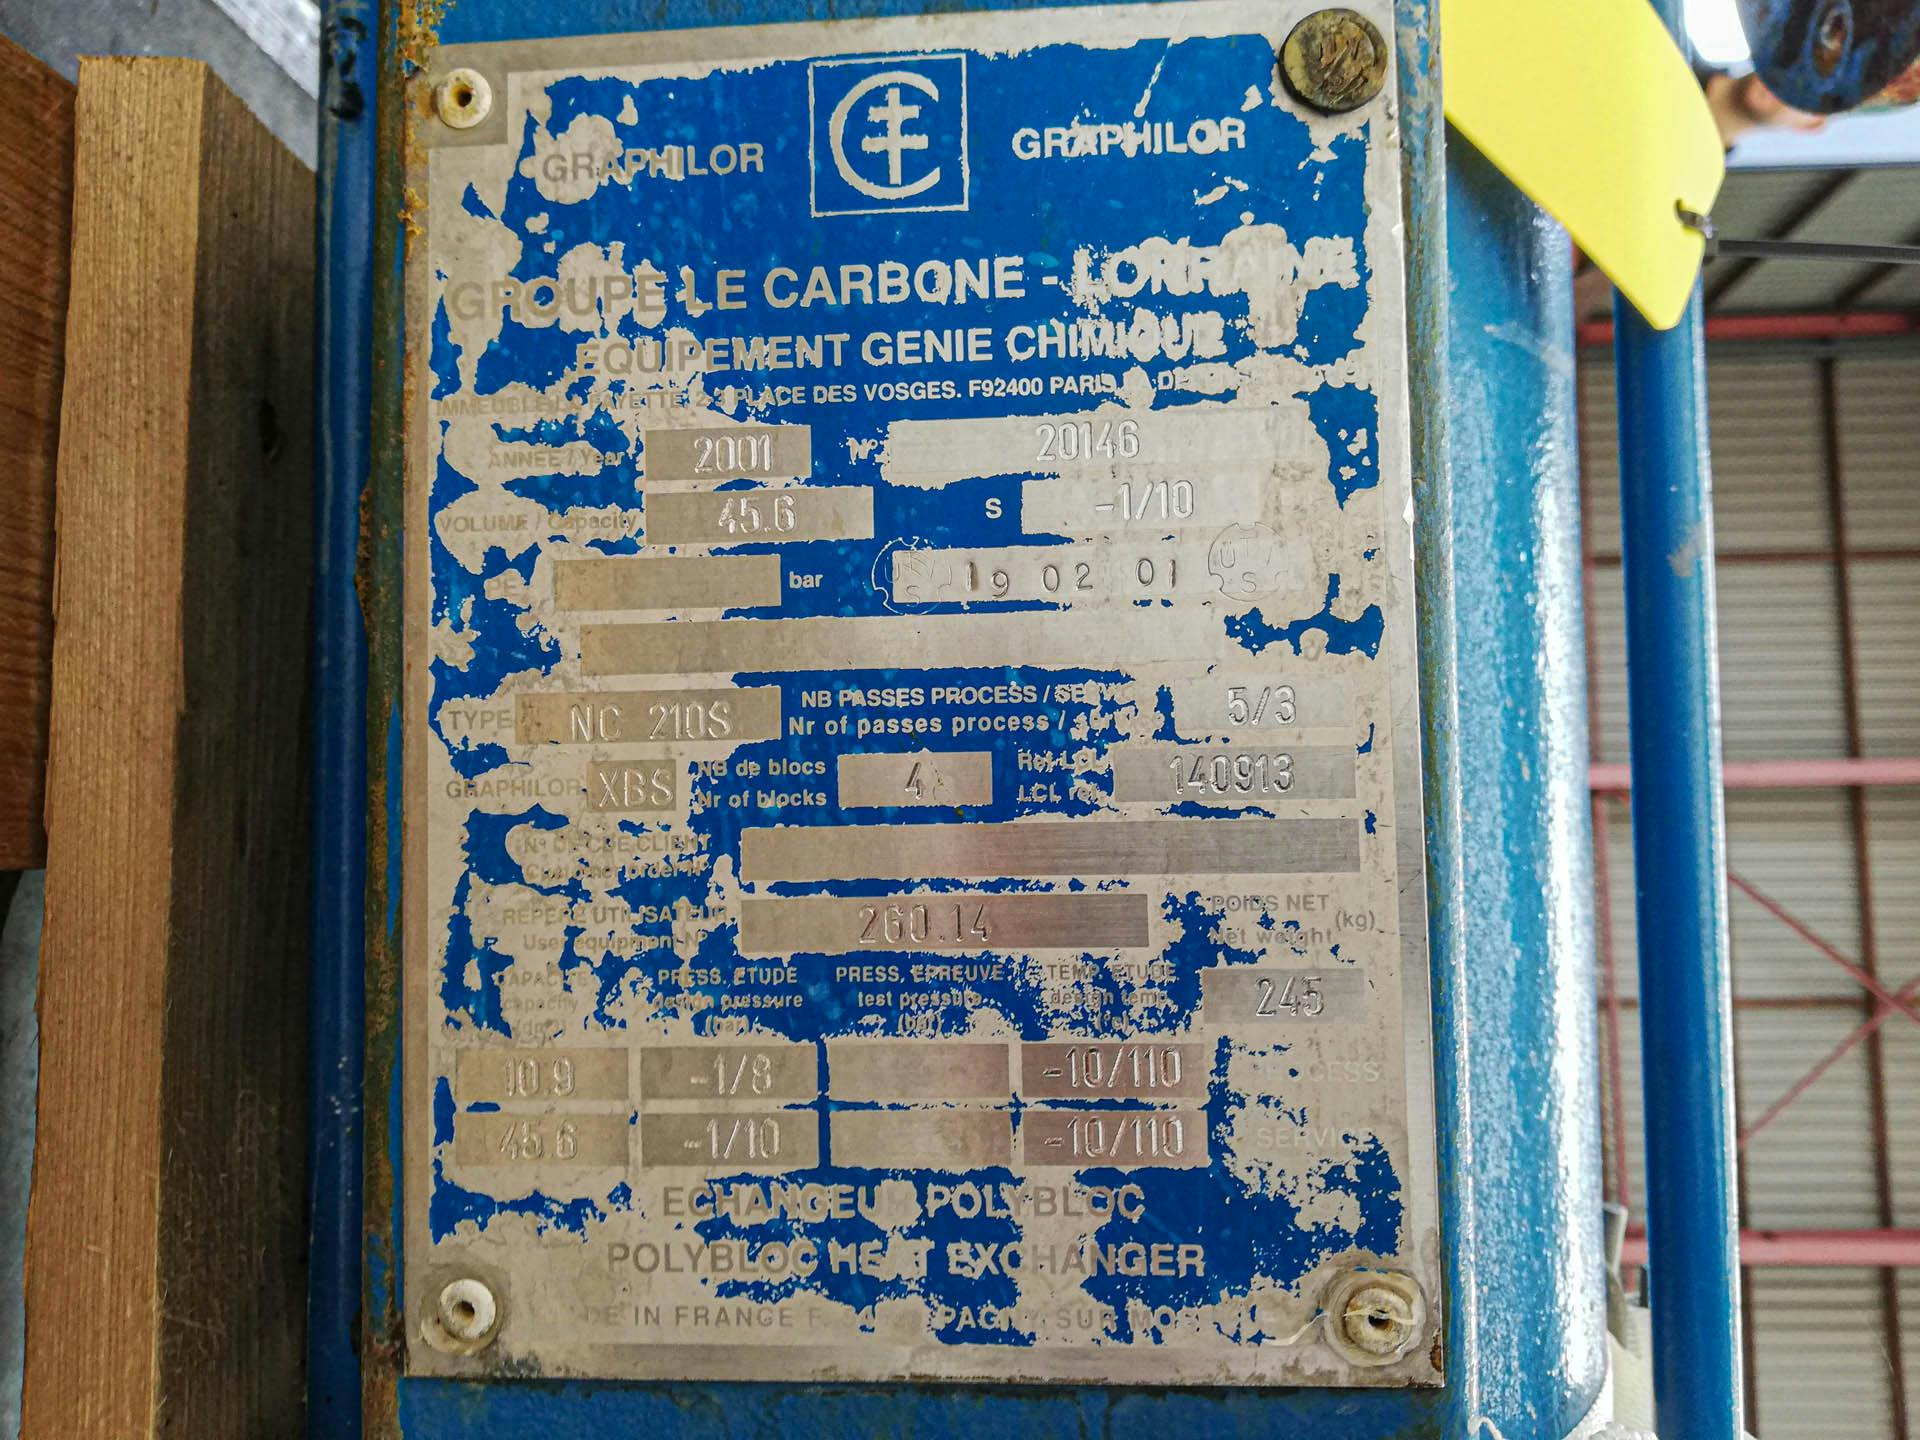 Le Carbone-Lorraine NC210S - Pláštový a trubkový výmeník tepla - image 5